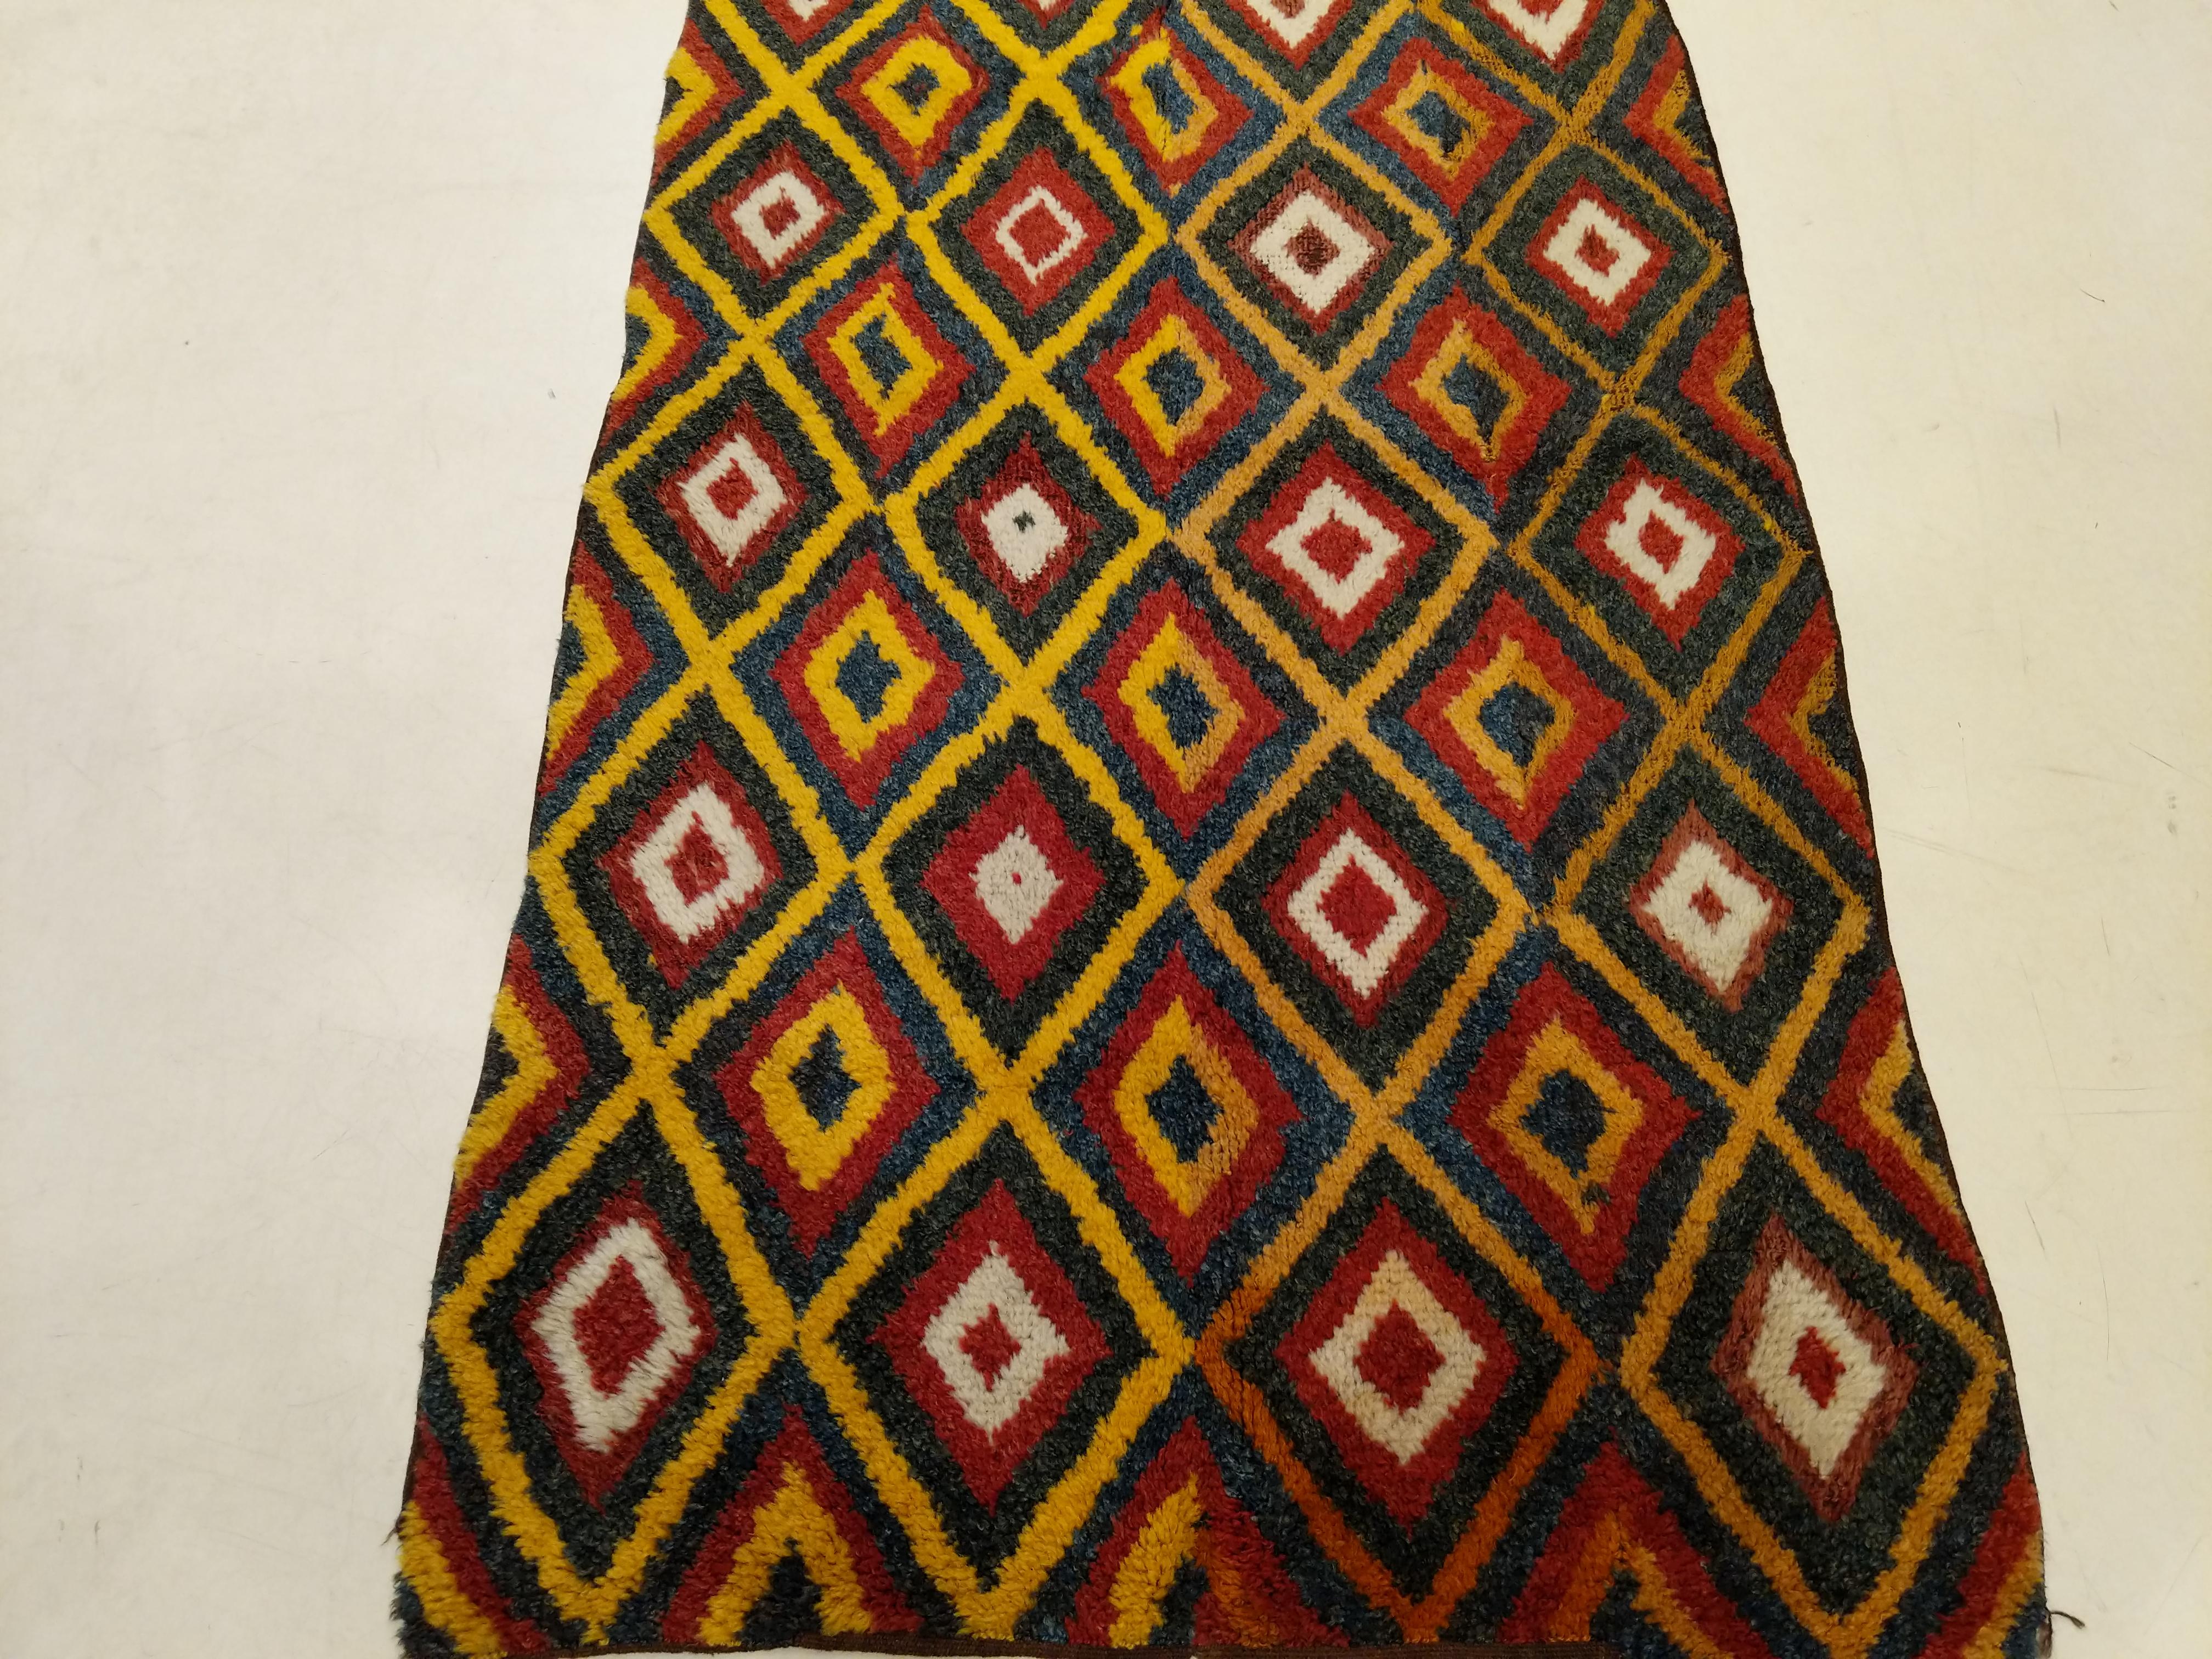 Les julkhyrs sont les tapis longuement empilés des Ouzbeks d'Asie centrale et sont représentatifs d'une ancienne tradition de tissage, lorsque les tapis étaient tissés par les personnes vivant dans les hauts plateaux glacés d'Asie centrale afin de